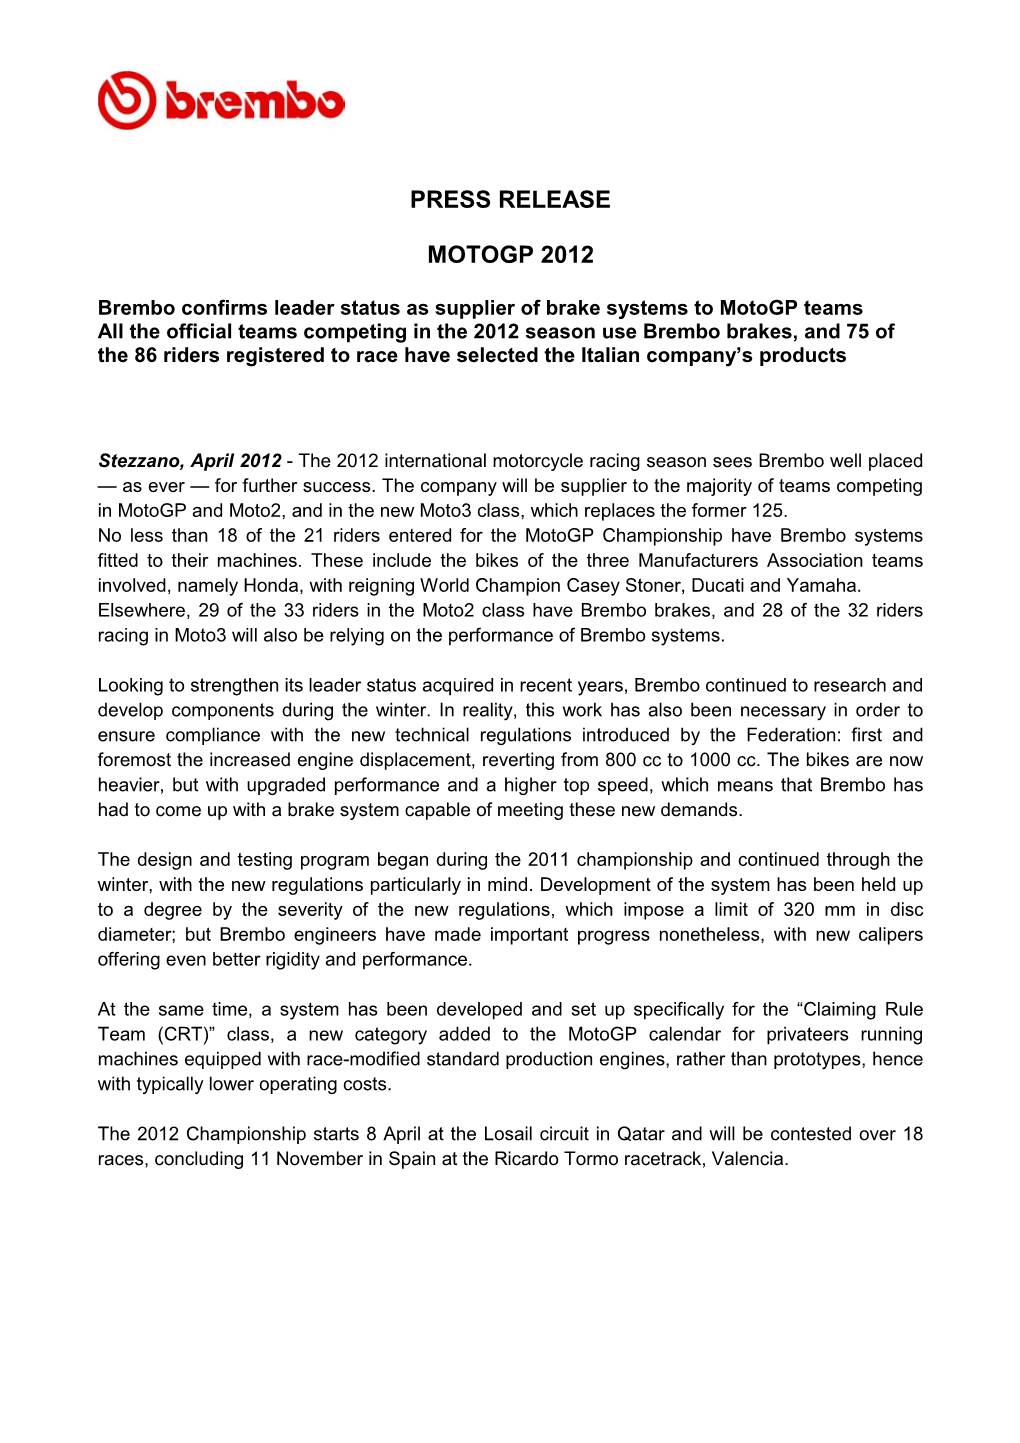 Press Release Motogp 2012